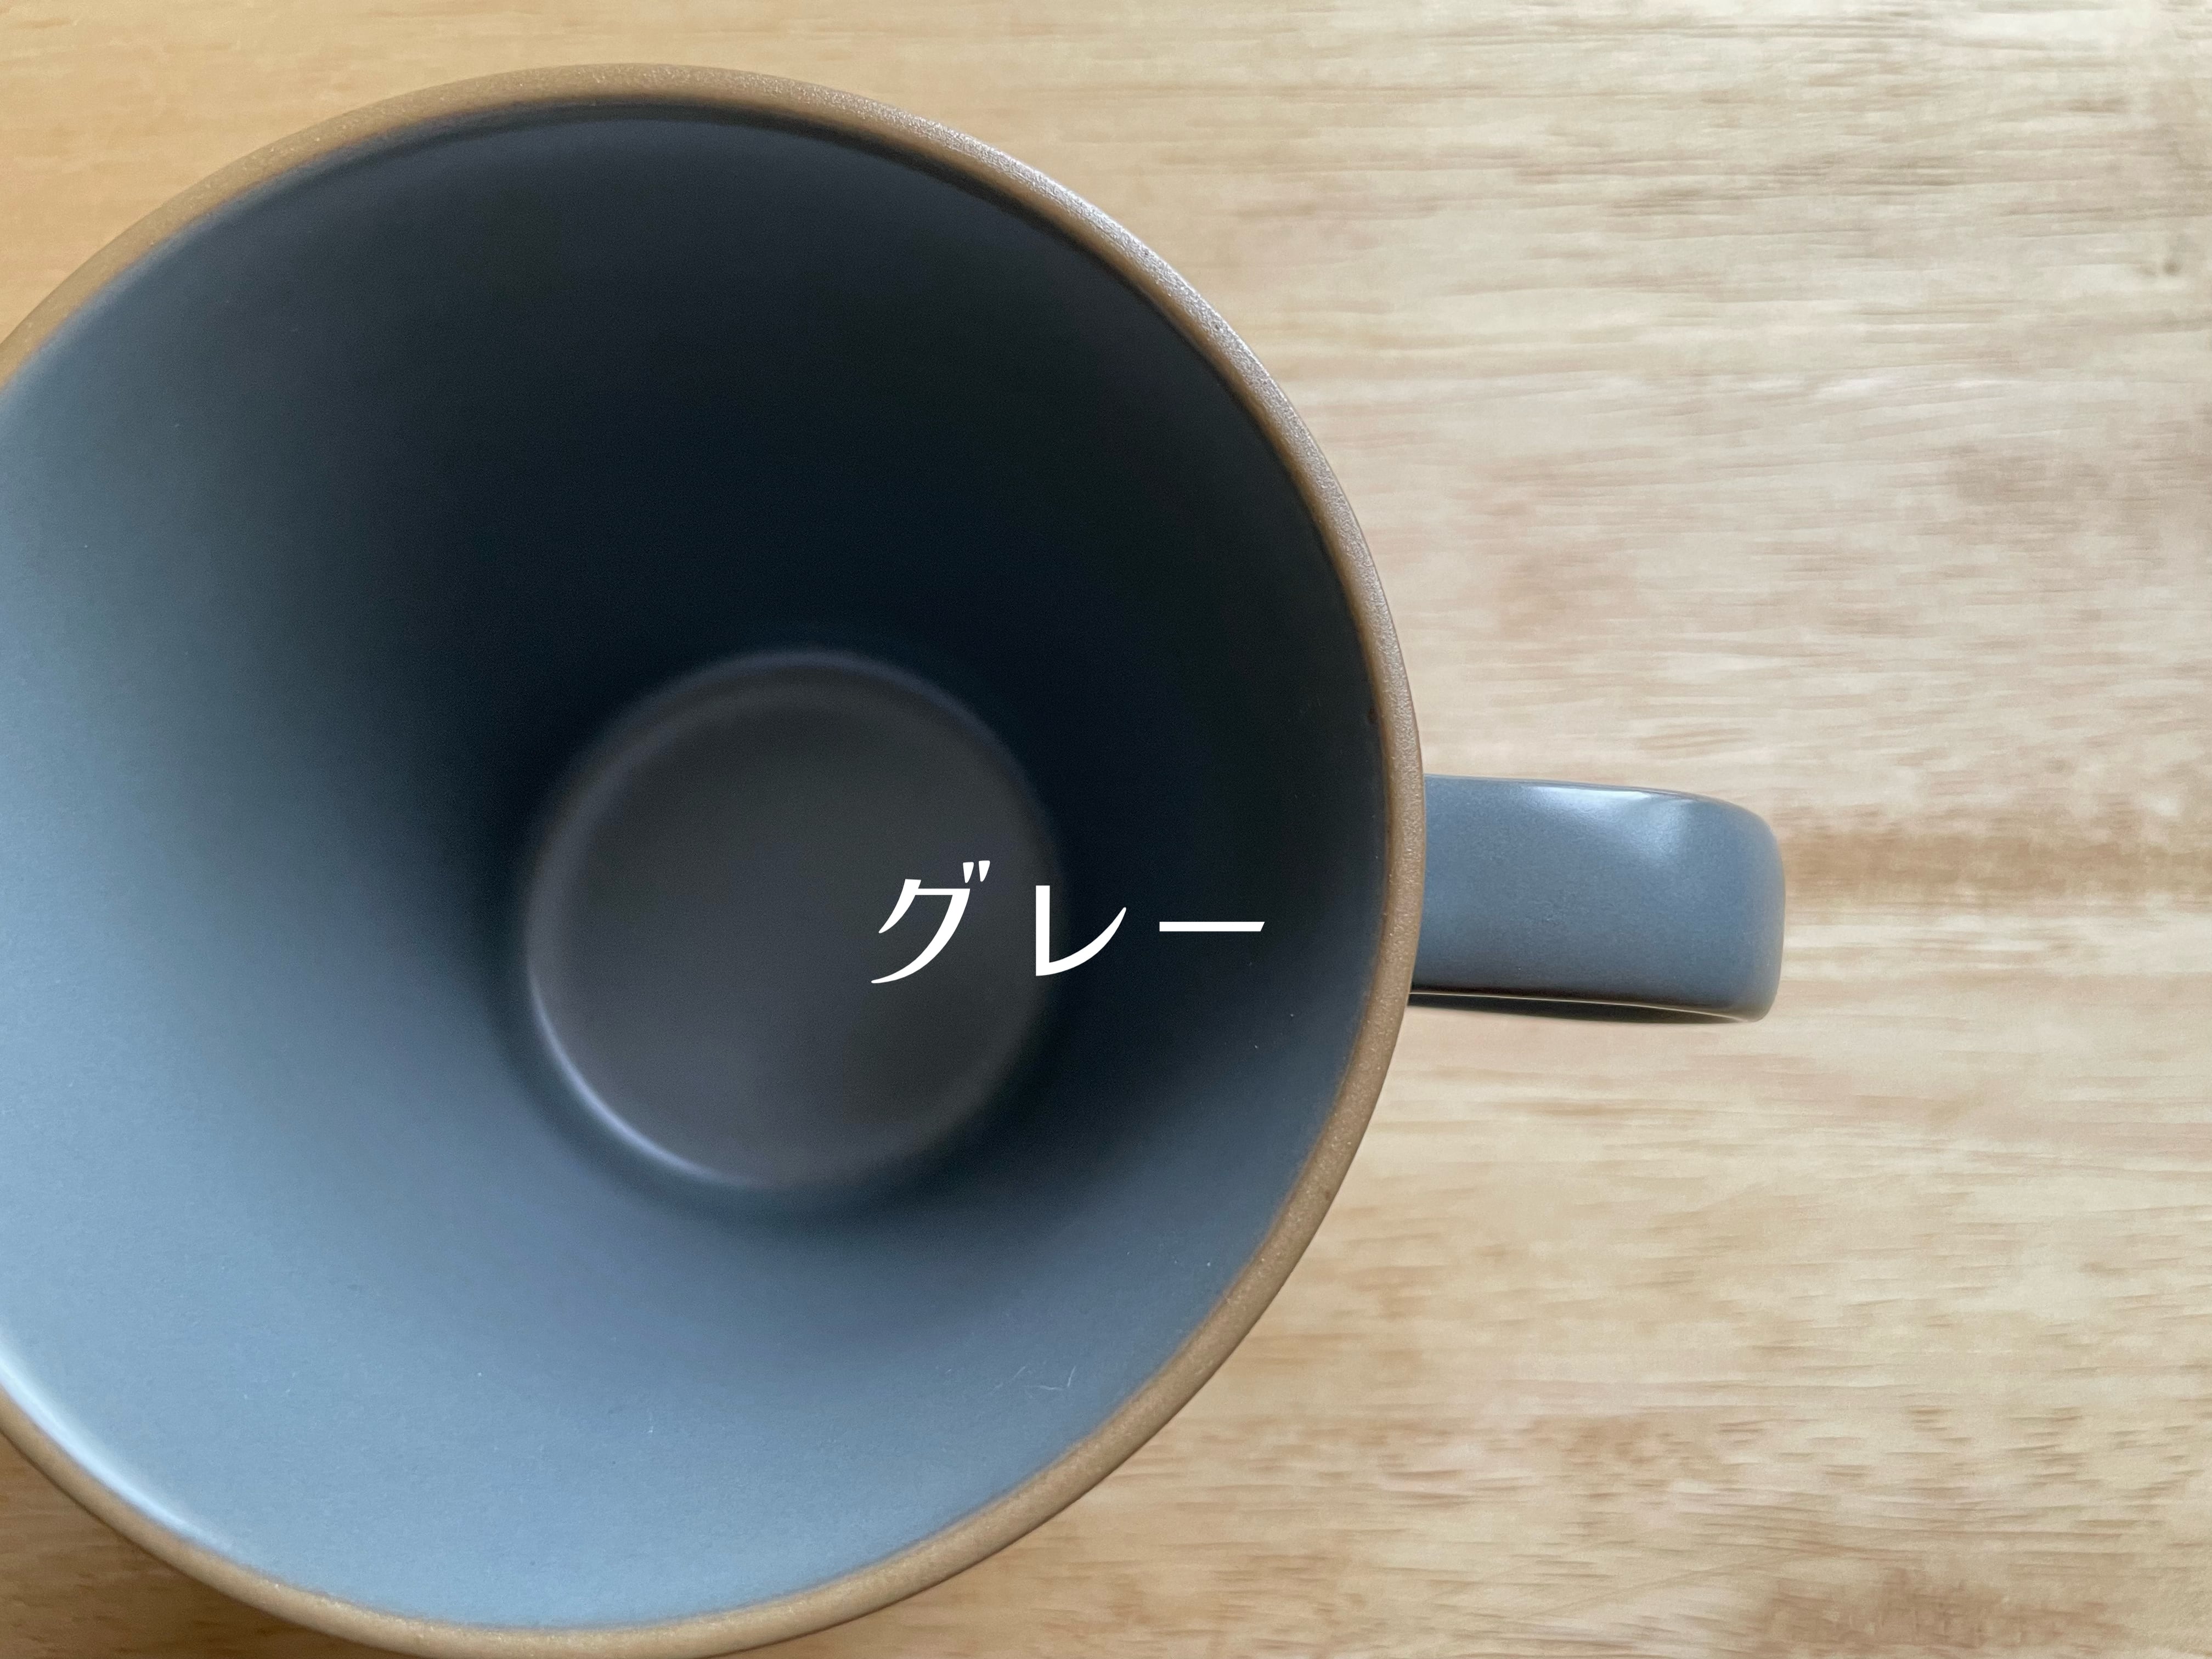 TAMAKI エッジライン カフェ風マグカップ  おしゃれくすみカラー 北欧 ギフト